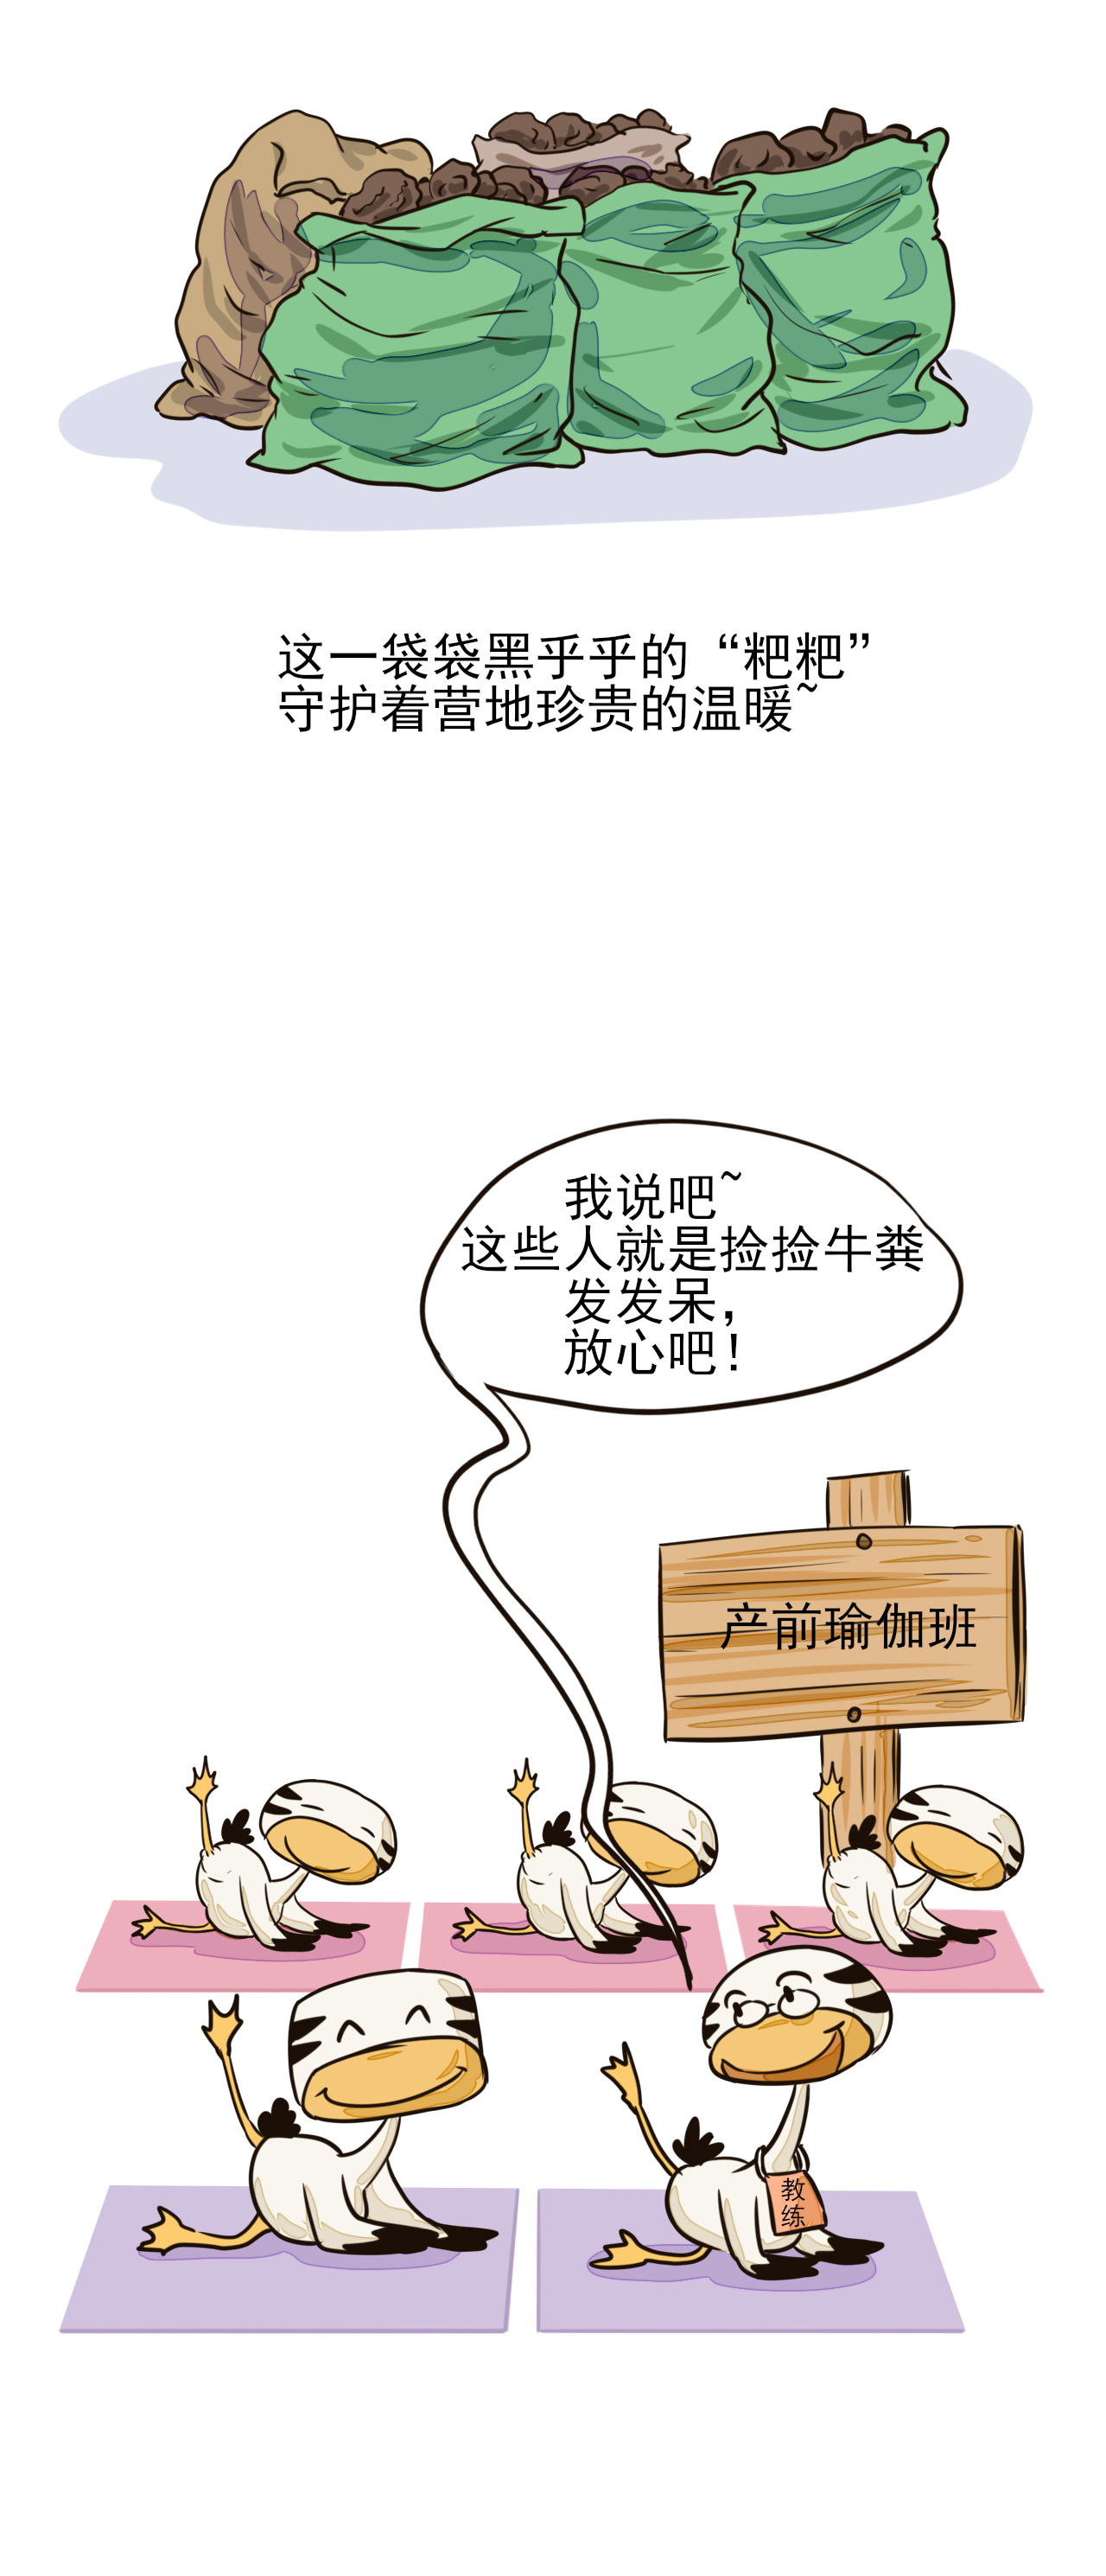 【漫画连载丨沱沱河综合征——捡牛粪】